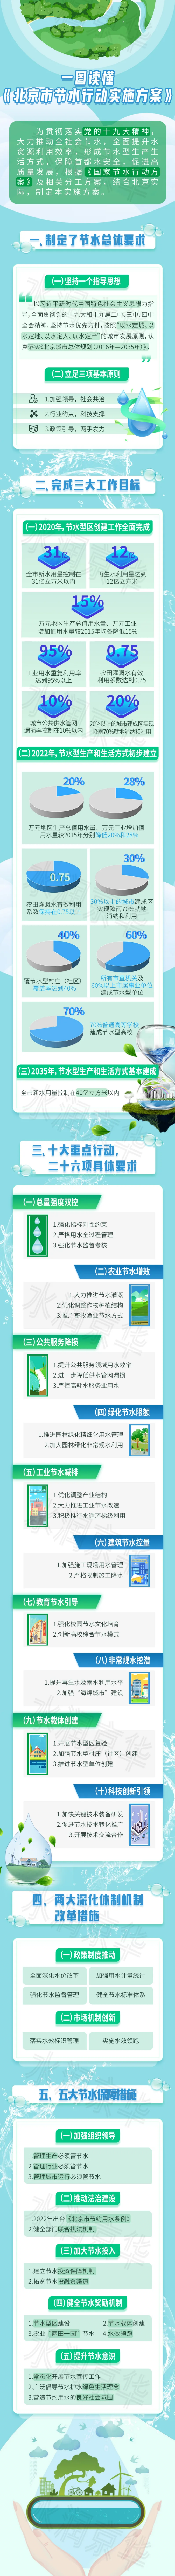 一图读懂《北京市节水行动实施方案》.png